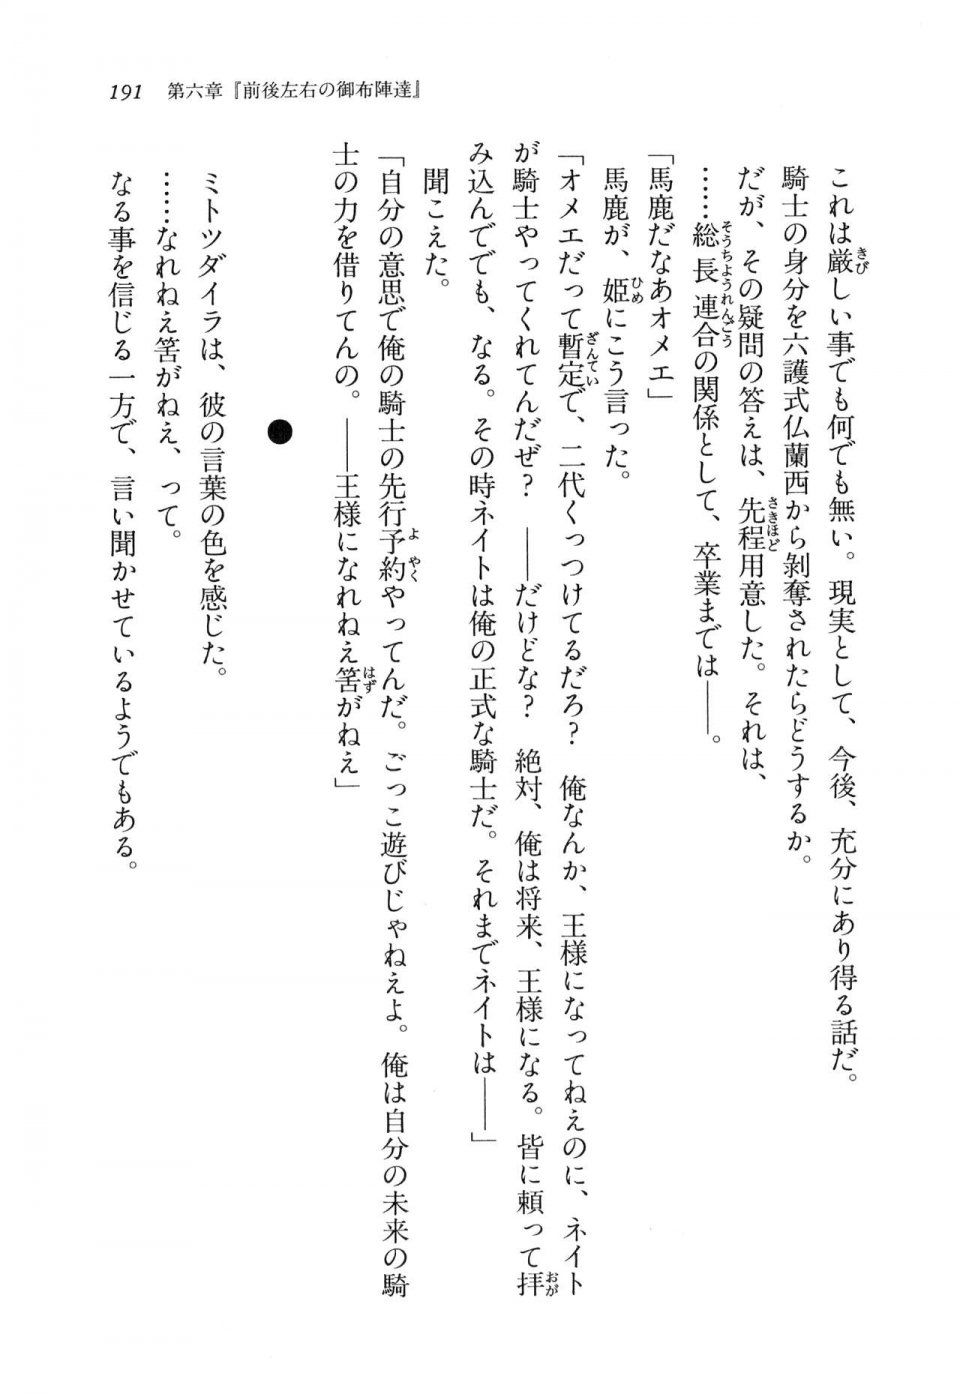 Kyoukai Senjou no Horizon LN Vol 11(5A) - Photo #191